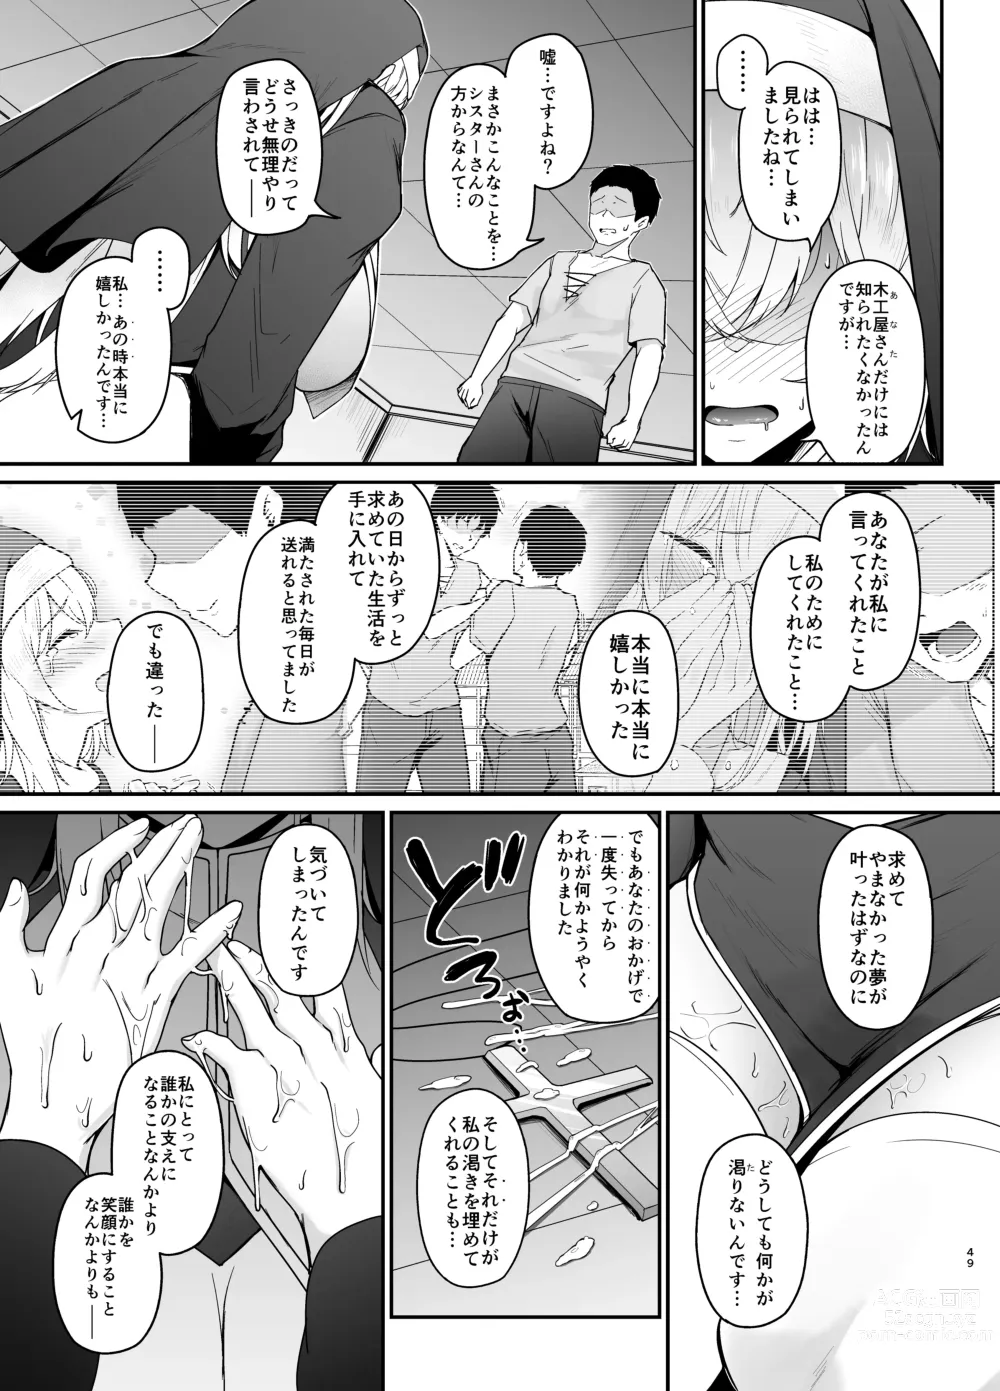 Page 48 of doujinshi Hin no Nai Onna wa Kirai desu ka?